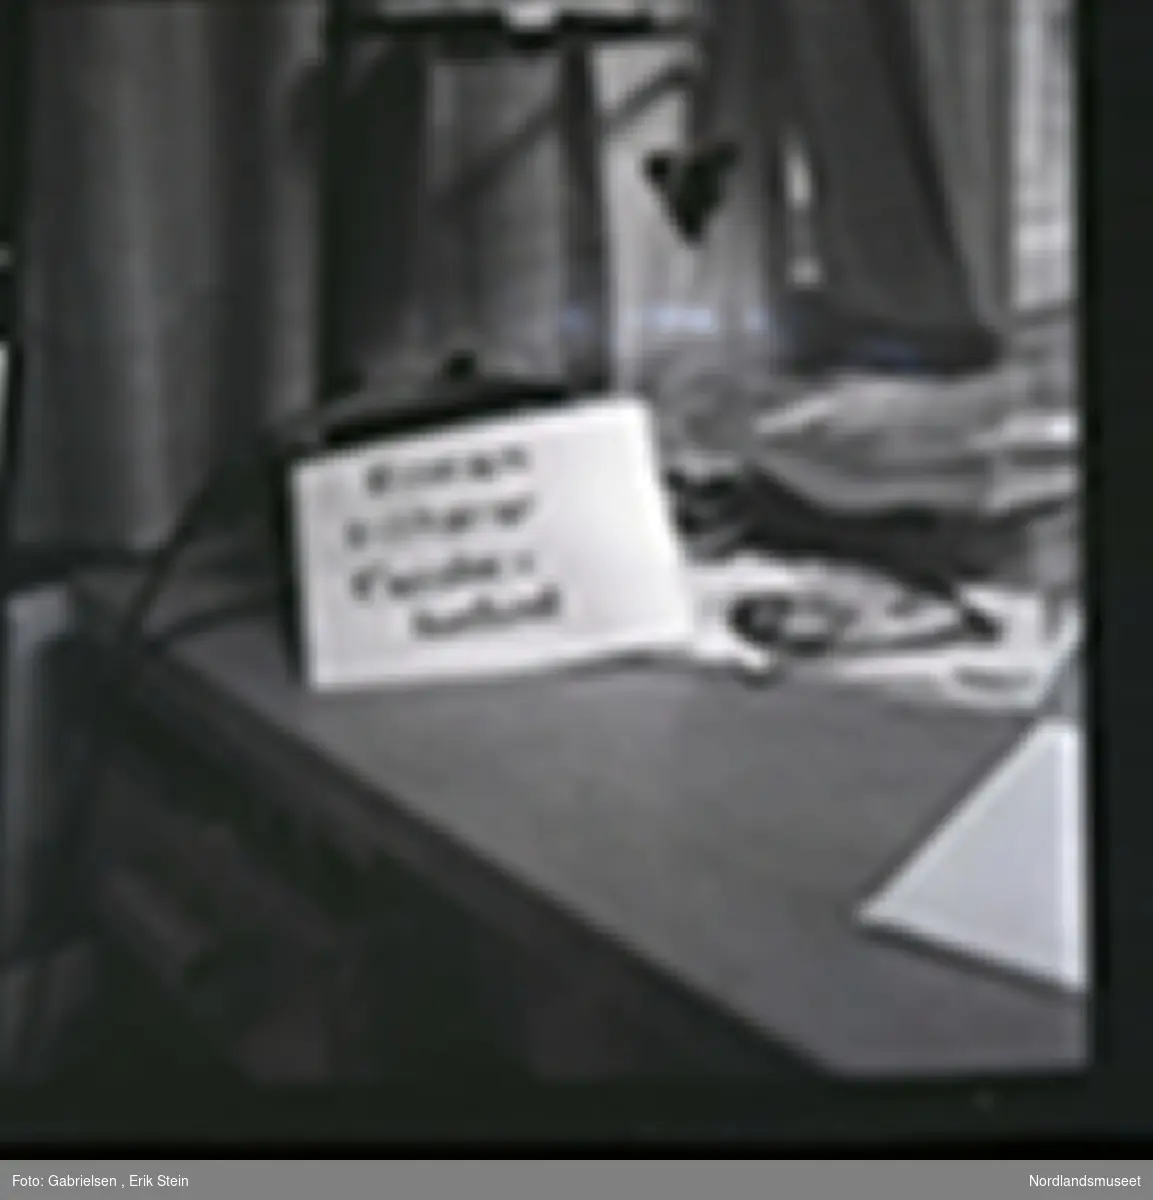 Fotografi av en lapp som står på en kontorpult til et kontor 
over en svart telefon som det går noen ledinger til 
og noen kasser med noen bøker og et avisutklipp og et kort med et klovneansikt 
og noen papirer og aviser som ligger på pulten
som man ser står vedsiden av to vinduer 
med gardiner og man ser en lampe med en lyspære
over pulten og man ser en åpen skuffe på pulten